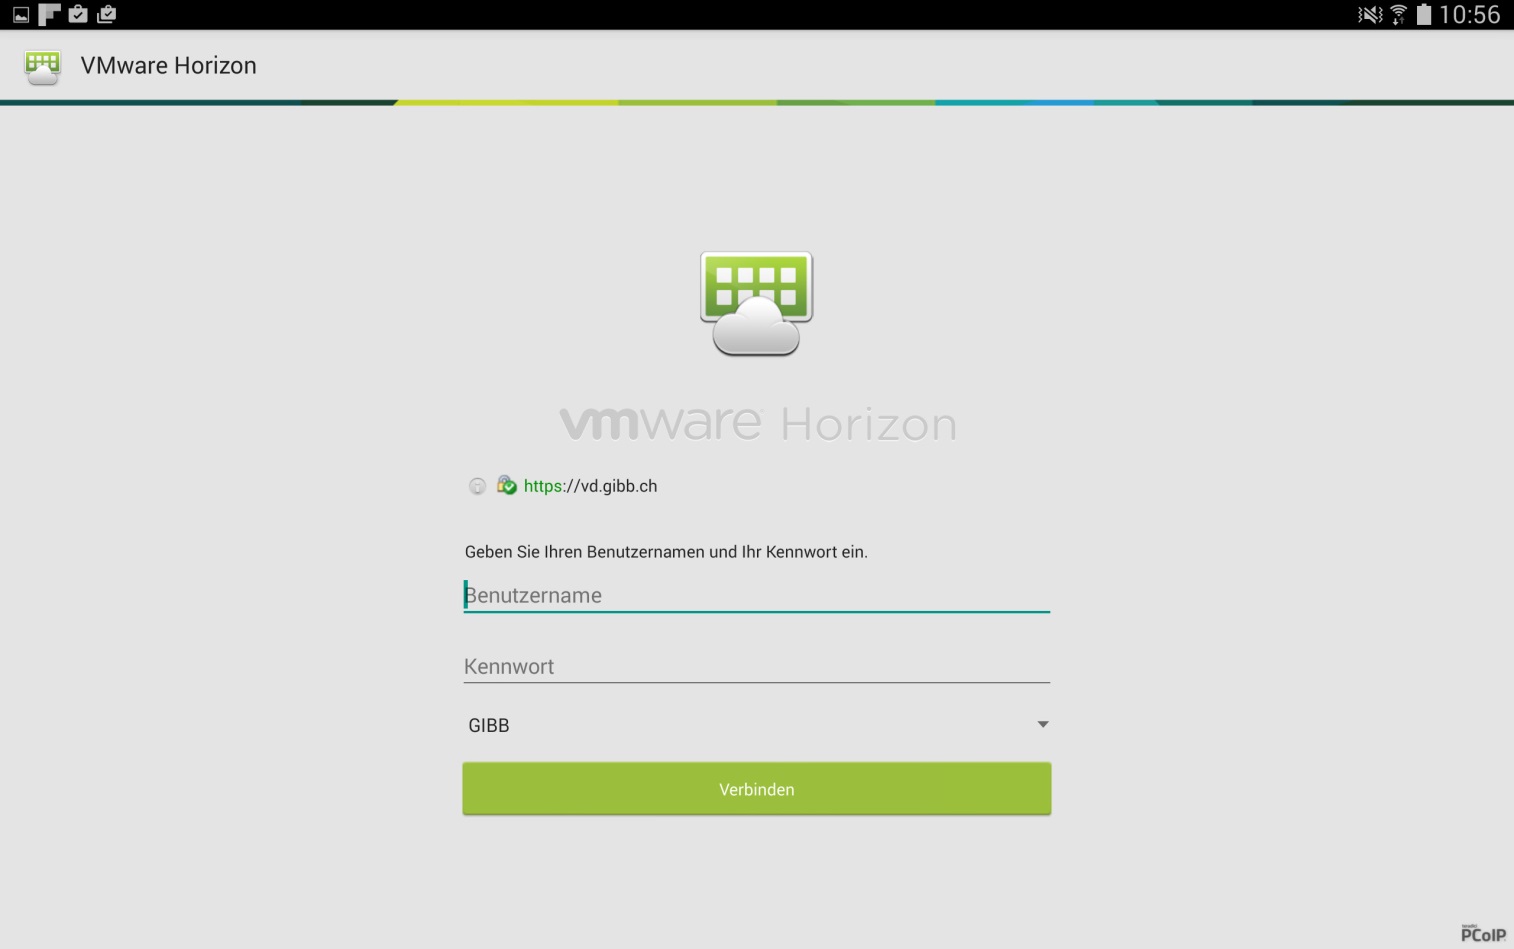 Nach dem Öffnen des VMware Horizon Clients den Servernamen "vd.gibb.